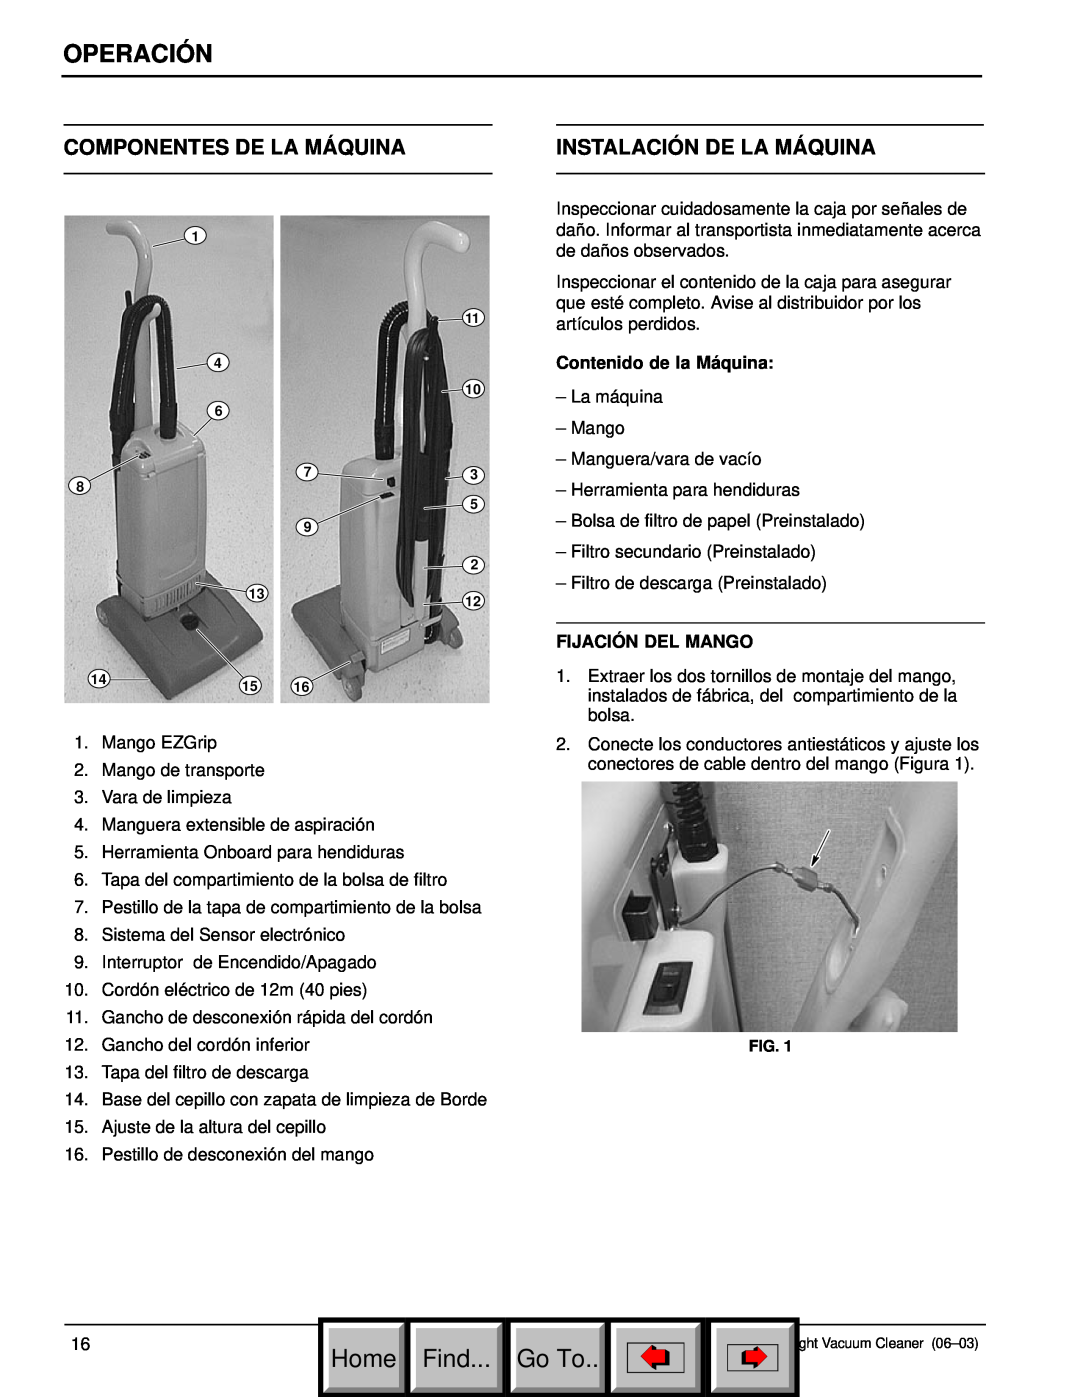 Philips 608669 manual Componentes De La Máquina, Instalación De La Máquina, Operación, Home Find, Go To 